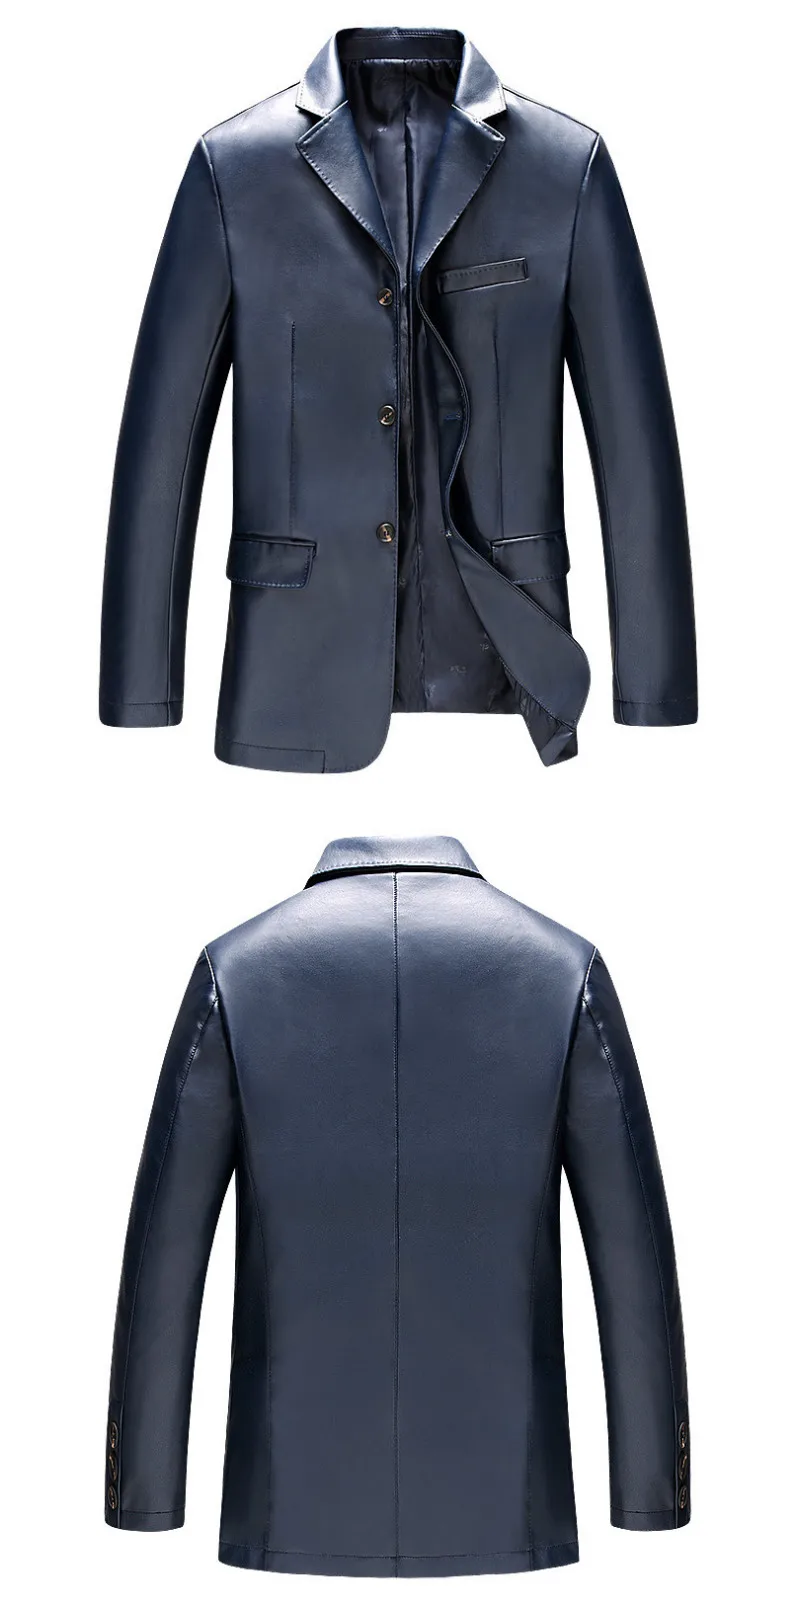 Демисезонный Для мужчин Кожаная куртка Повседневное PU пиджак мужской Однобортный Slim fit Для мужчин s Кожаные куртки пальто цвет: черный, синий